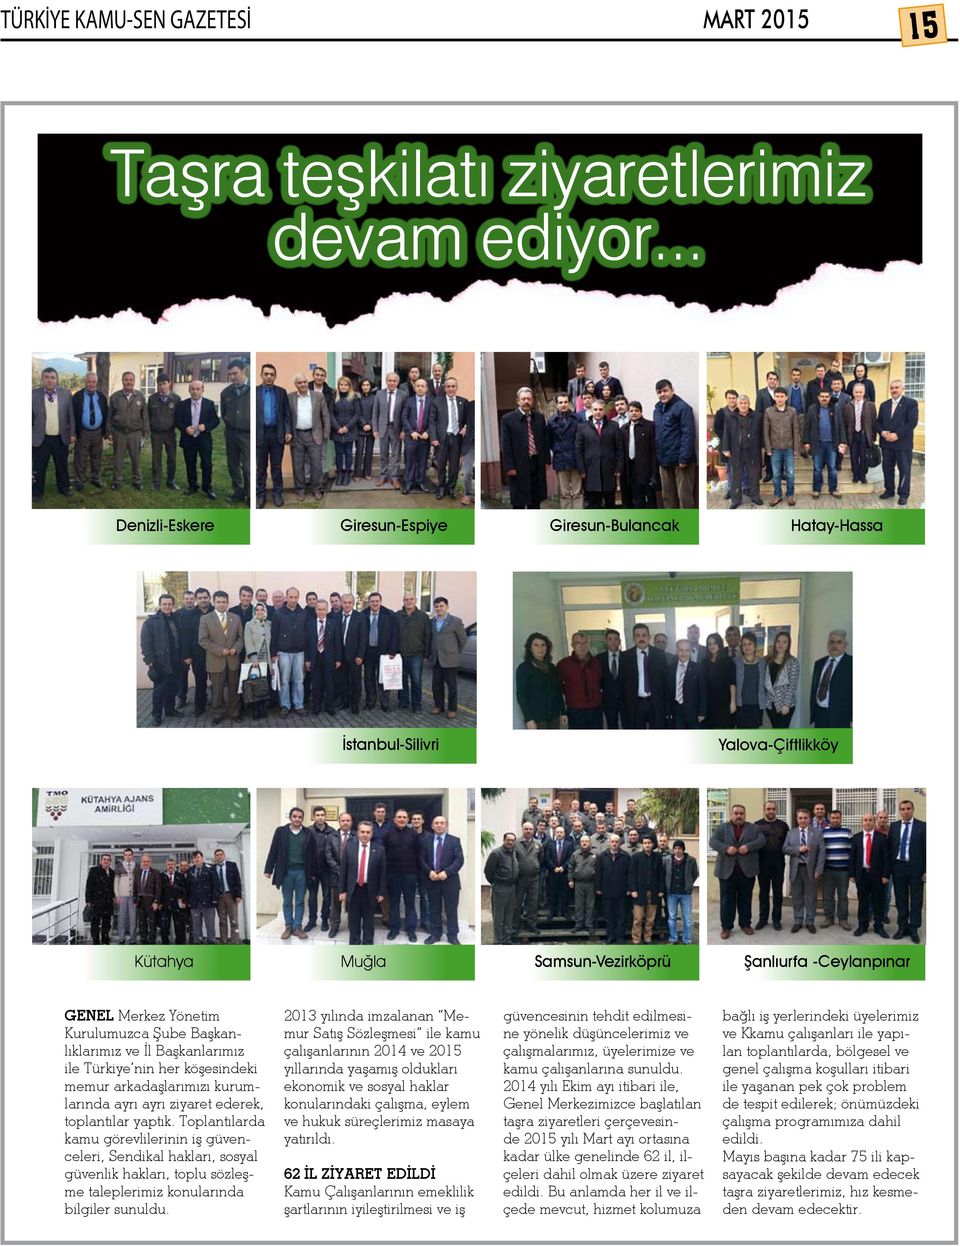 Başkanlıklarımız ve İl Başkanlarımız ile Türkiye nin her köşesindeki memur arkadaşlarımızı kurumlarında ayrı ayrı ziyaret ederek, toplantılar yaptık.